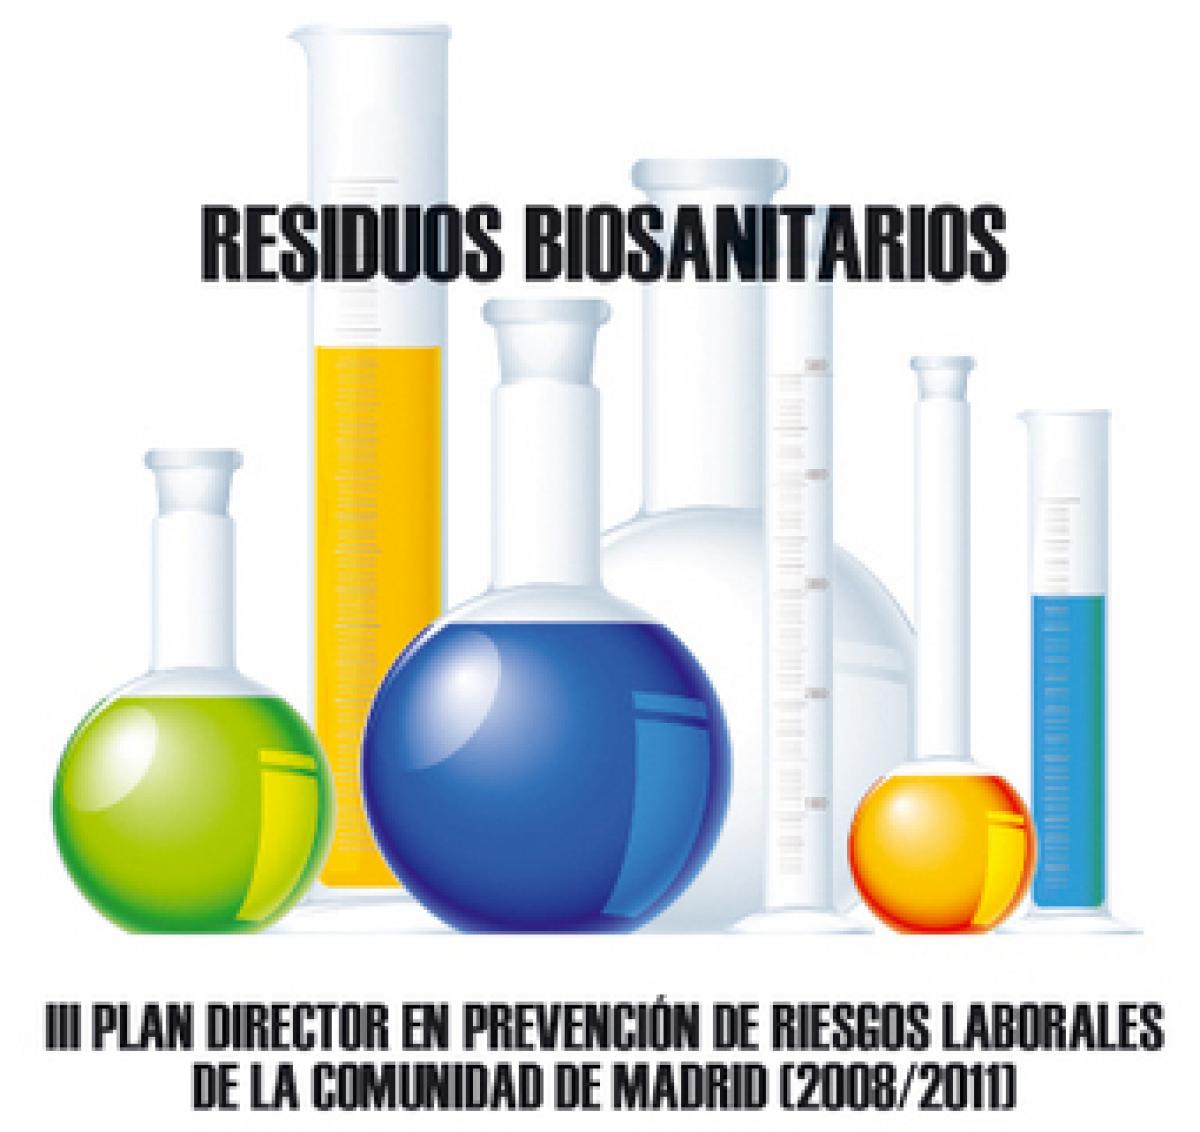 CCOO organiza una jornada sobre residuos biosanitarios